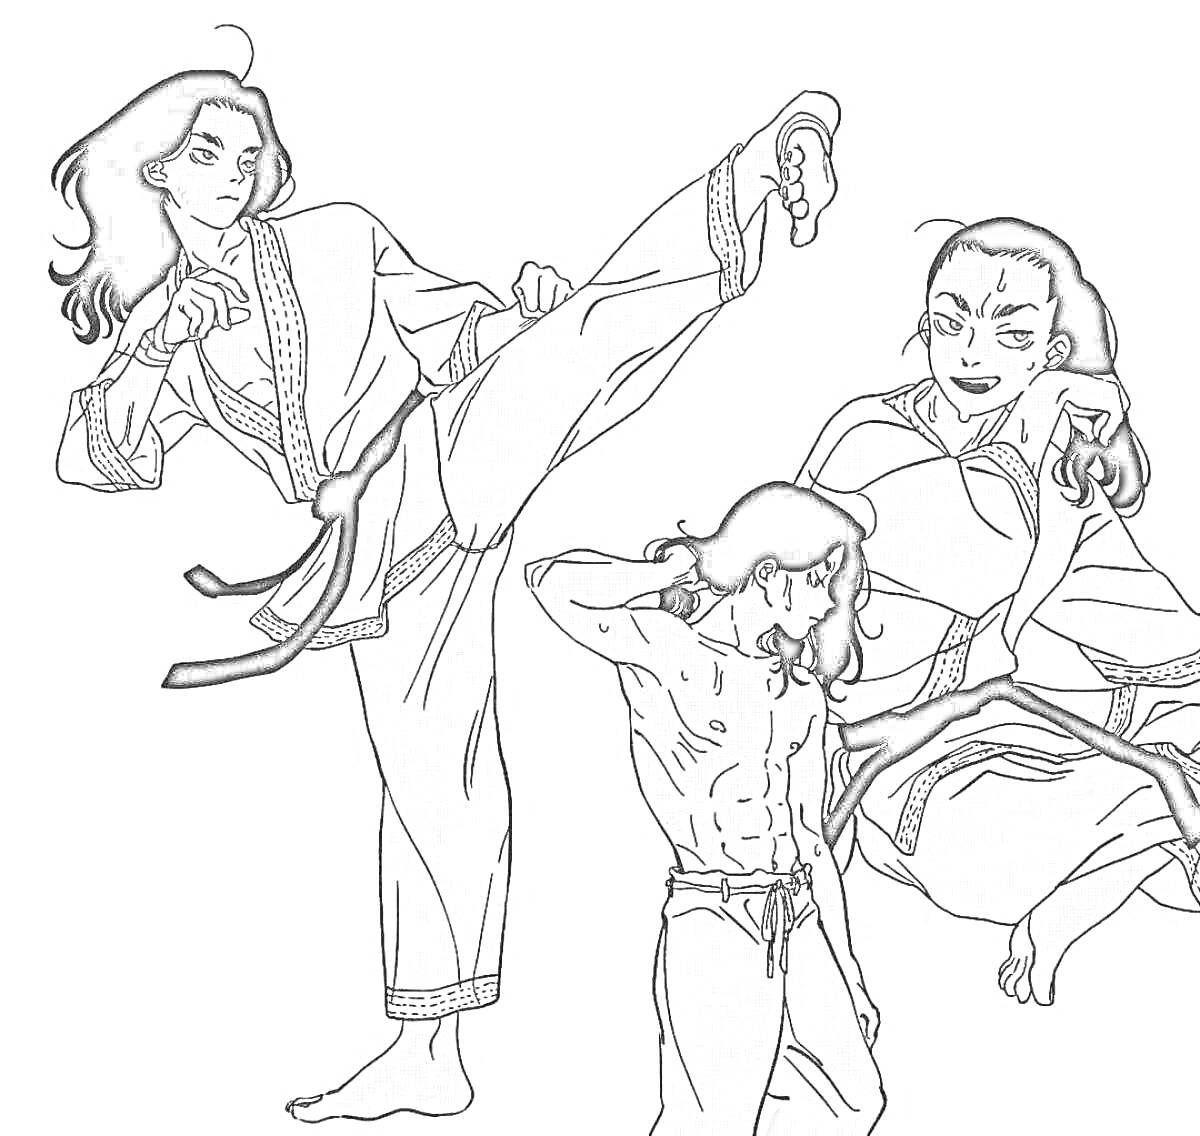 Раскраска три бойца в кимоно, высокие удары ногами, боевые позы